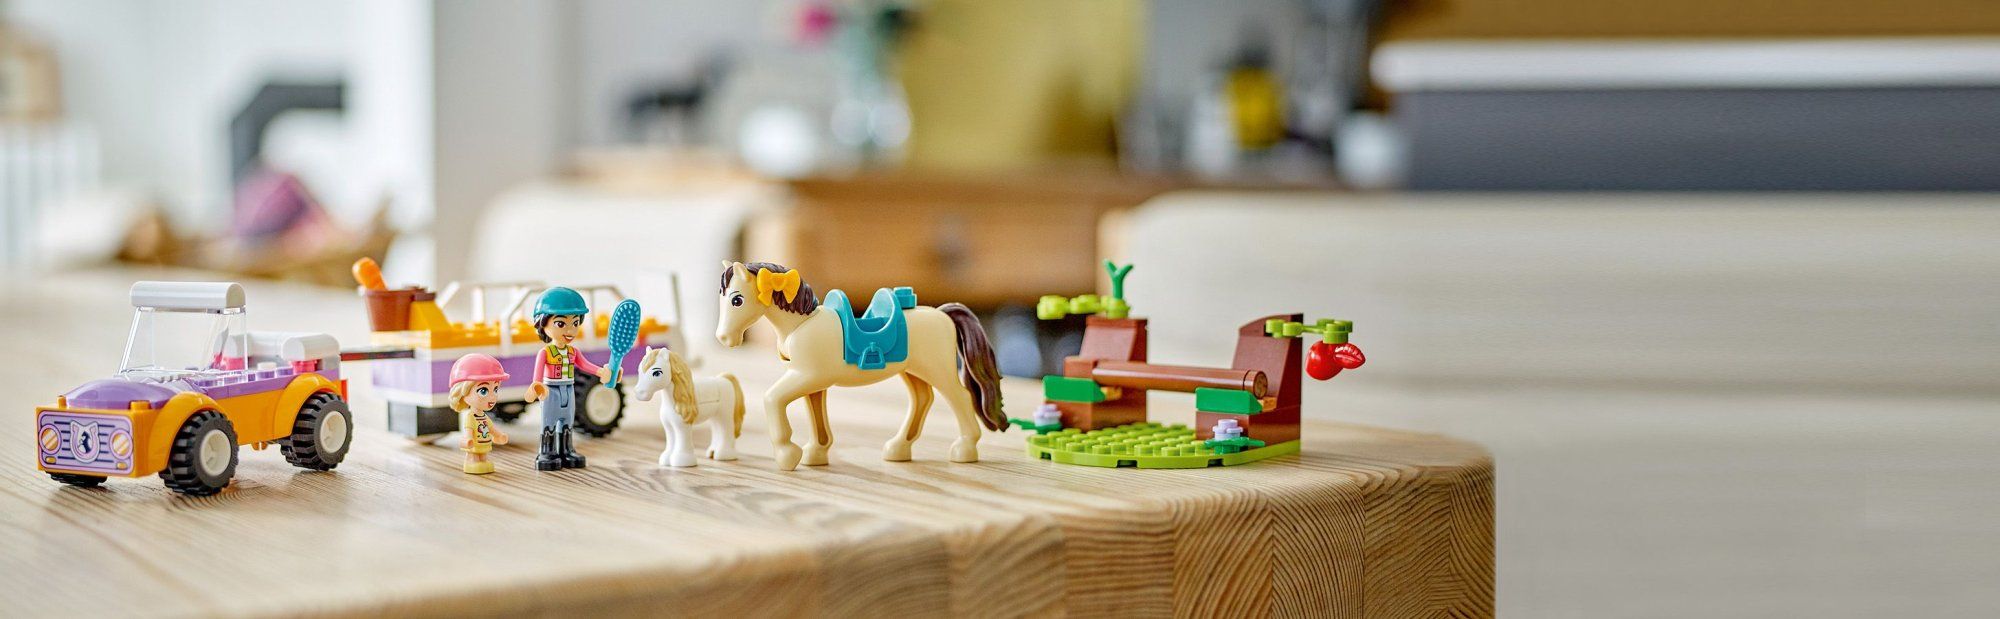 LEGO Friends 42634 Přívěs s koněm a poníkem